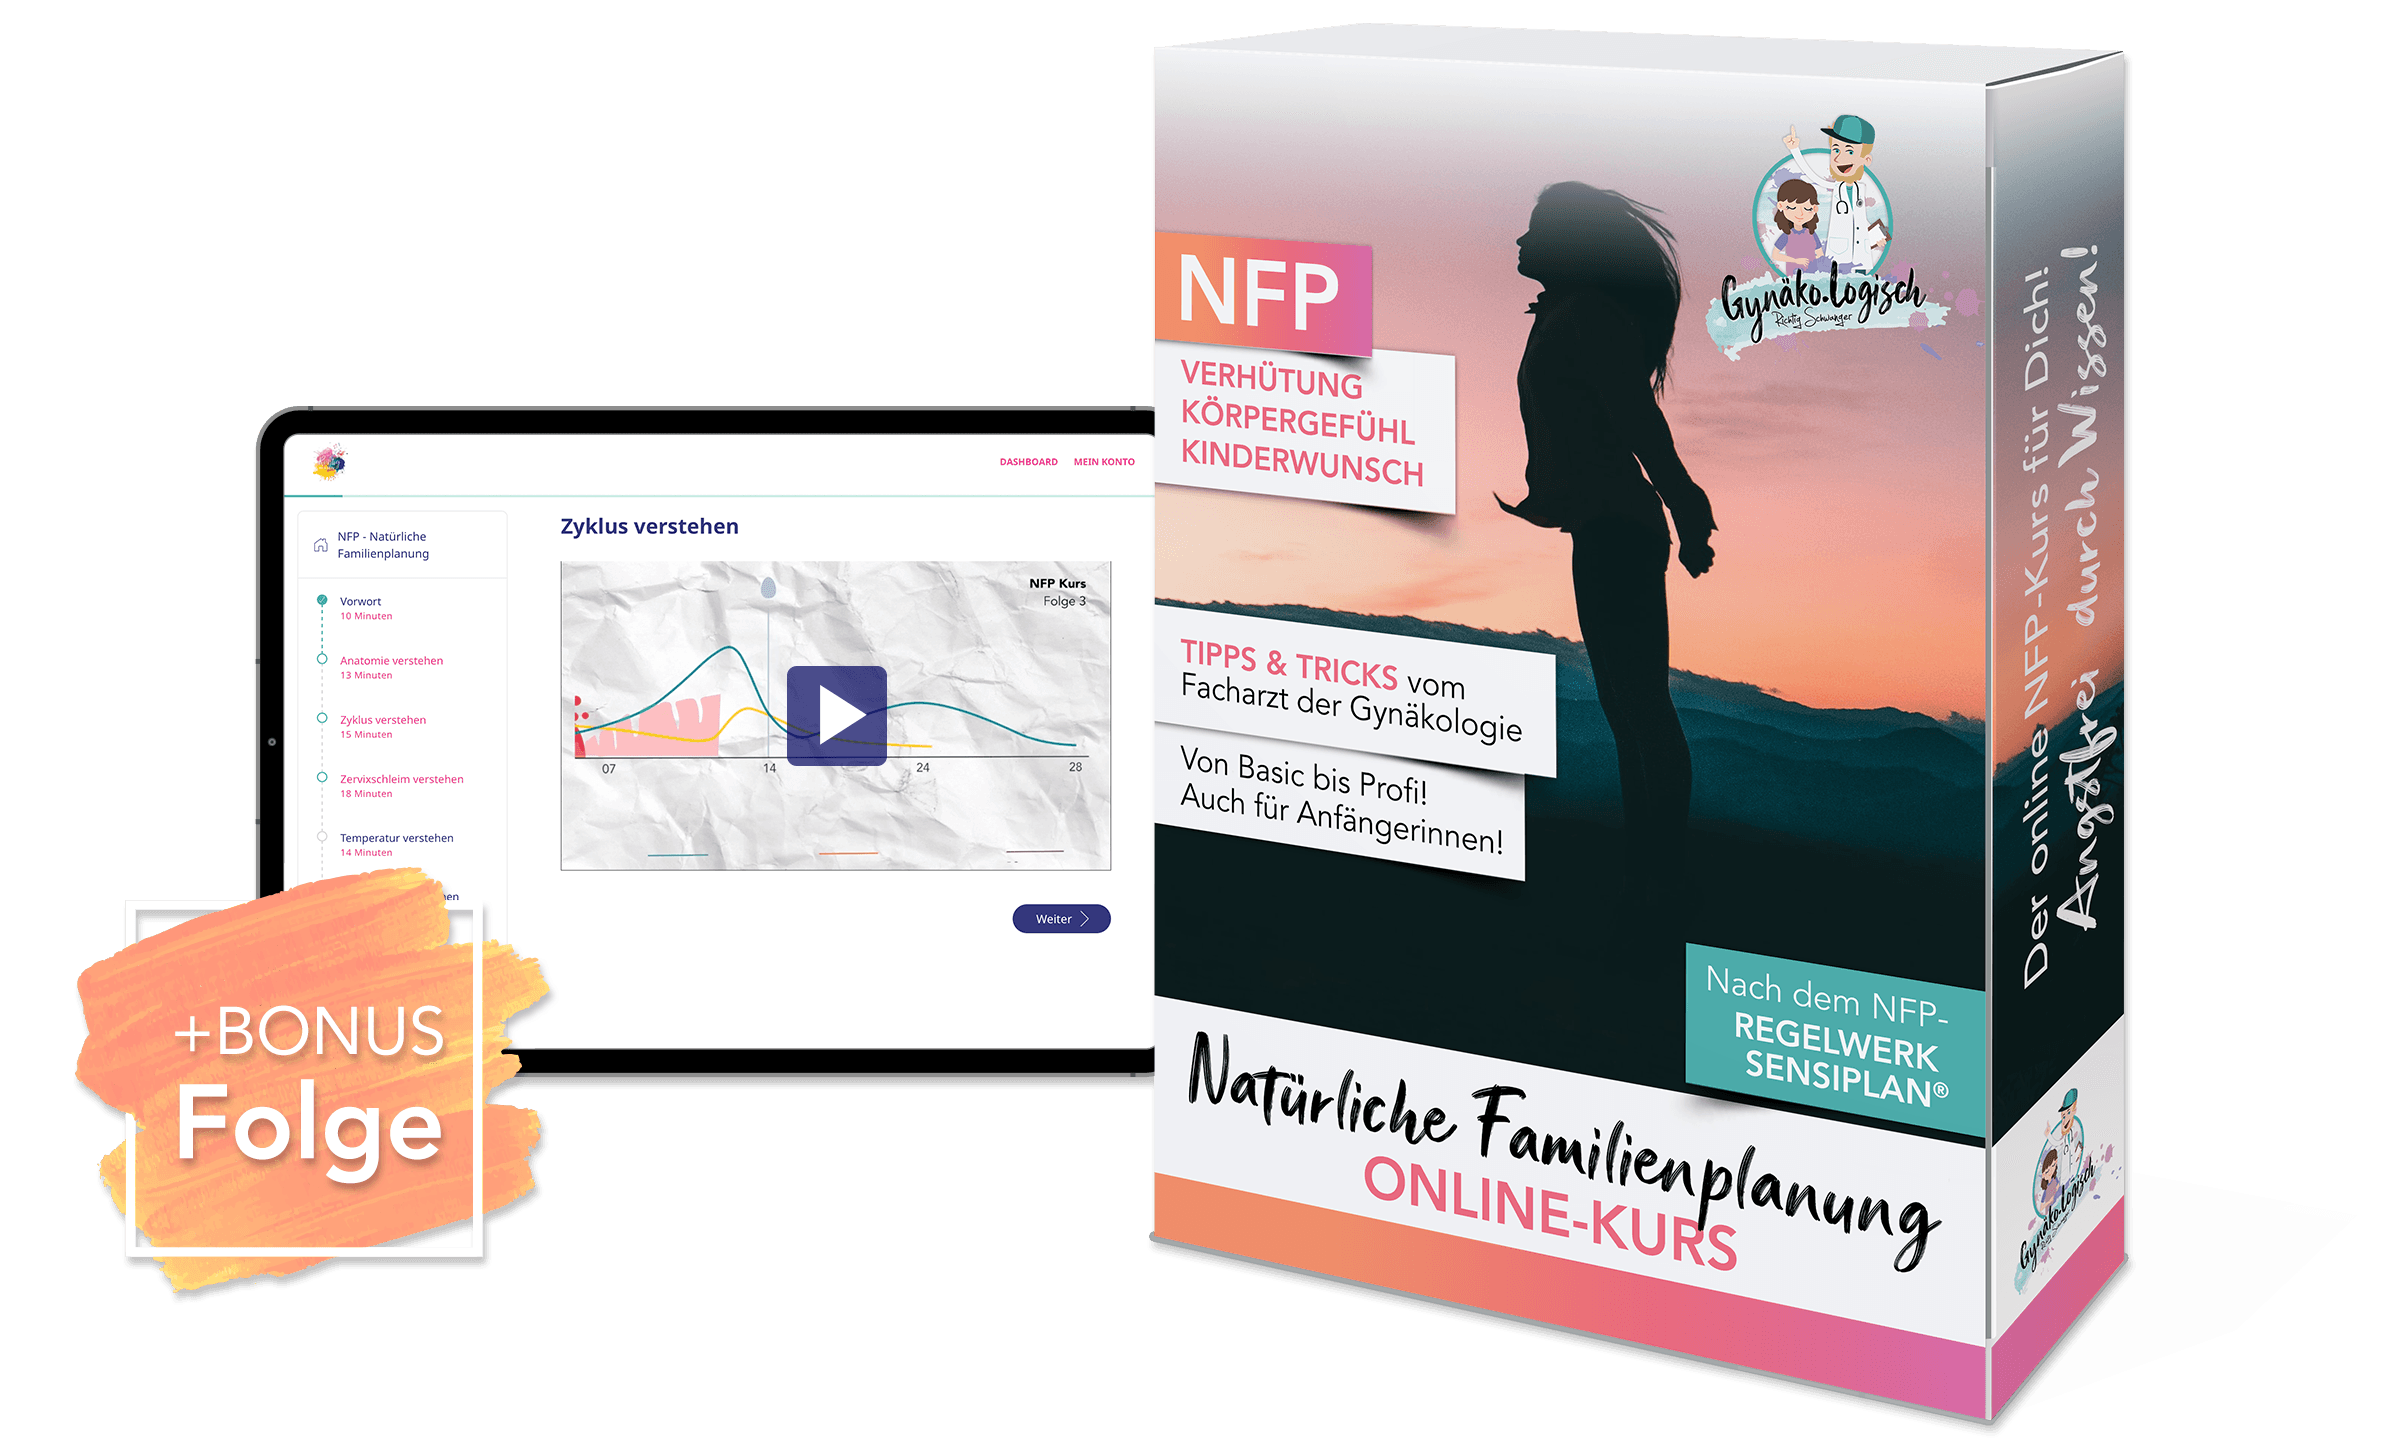 NFP - Natürliche Familienplanung